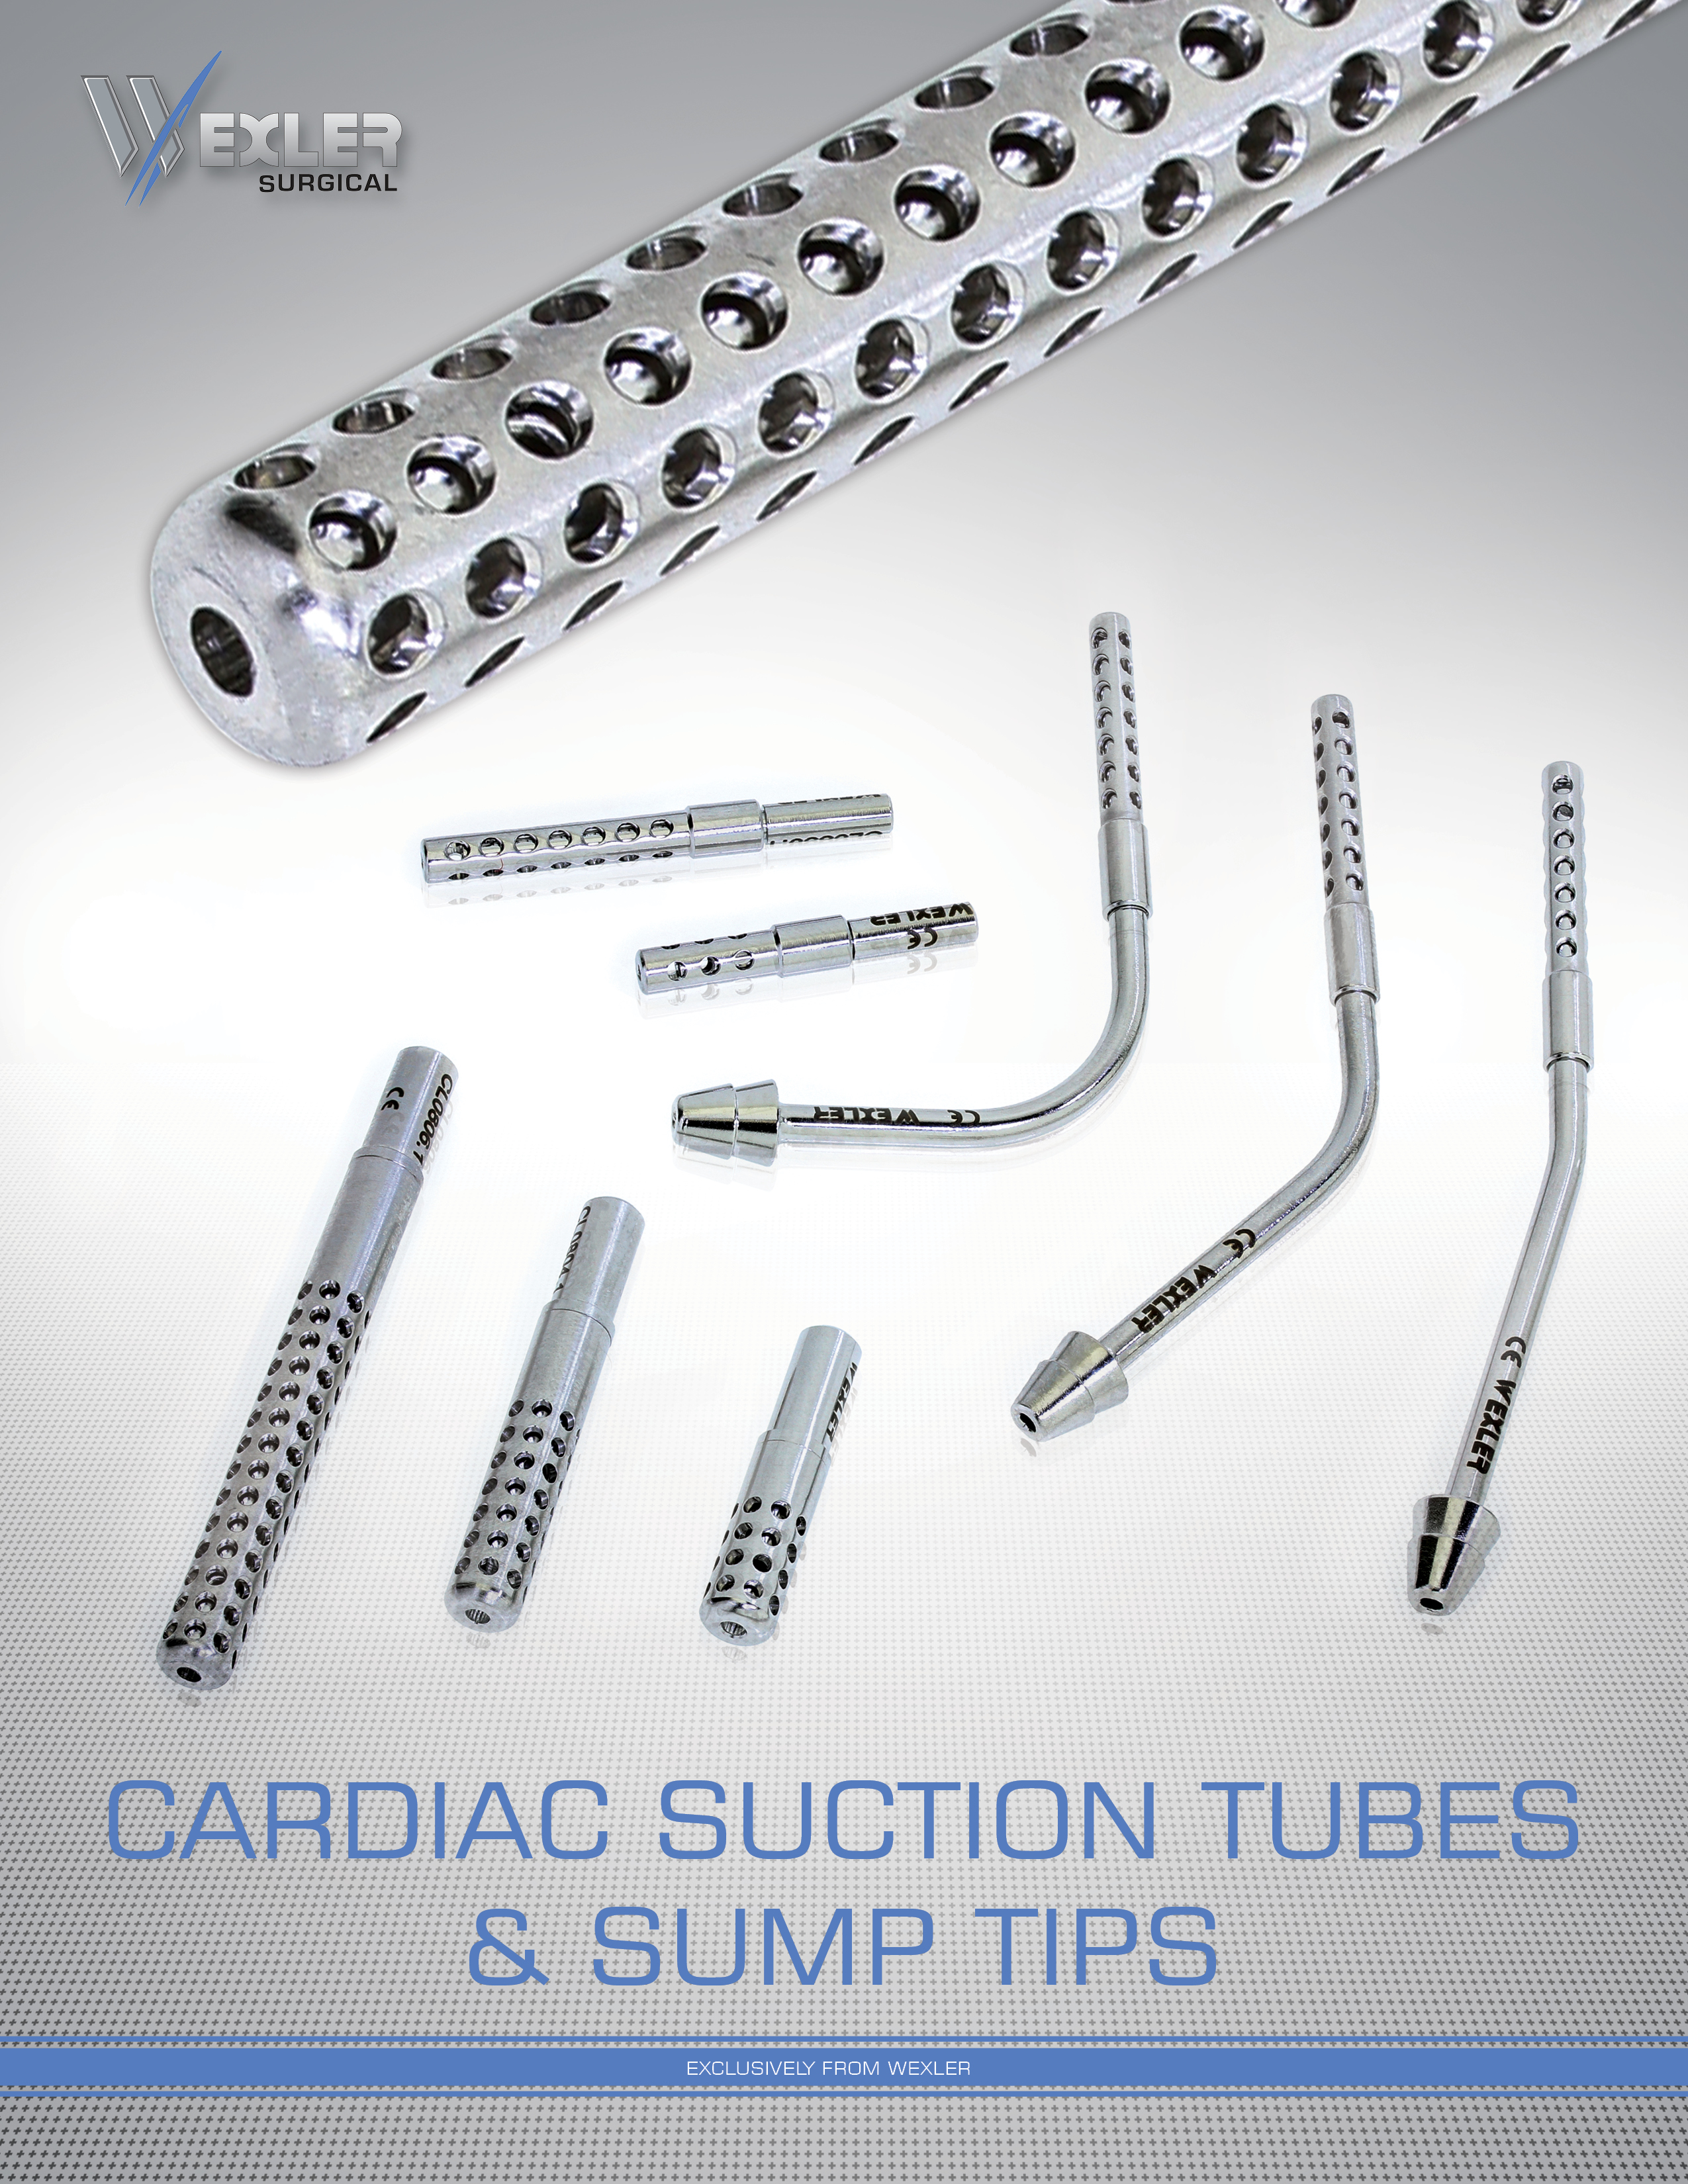 Cardiac Sump Tips & Suction Tubes